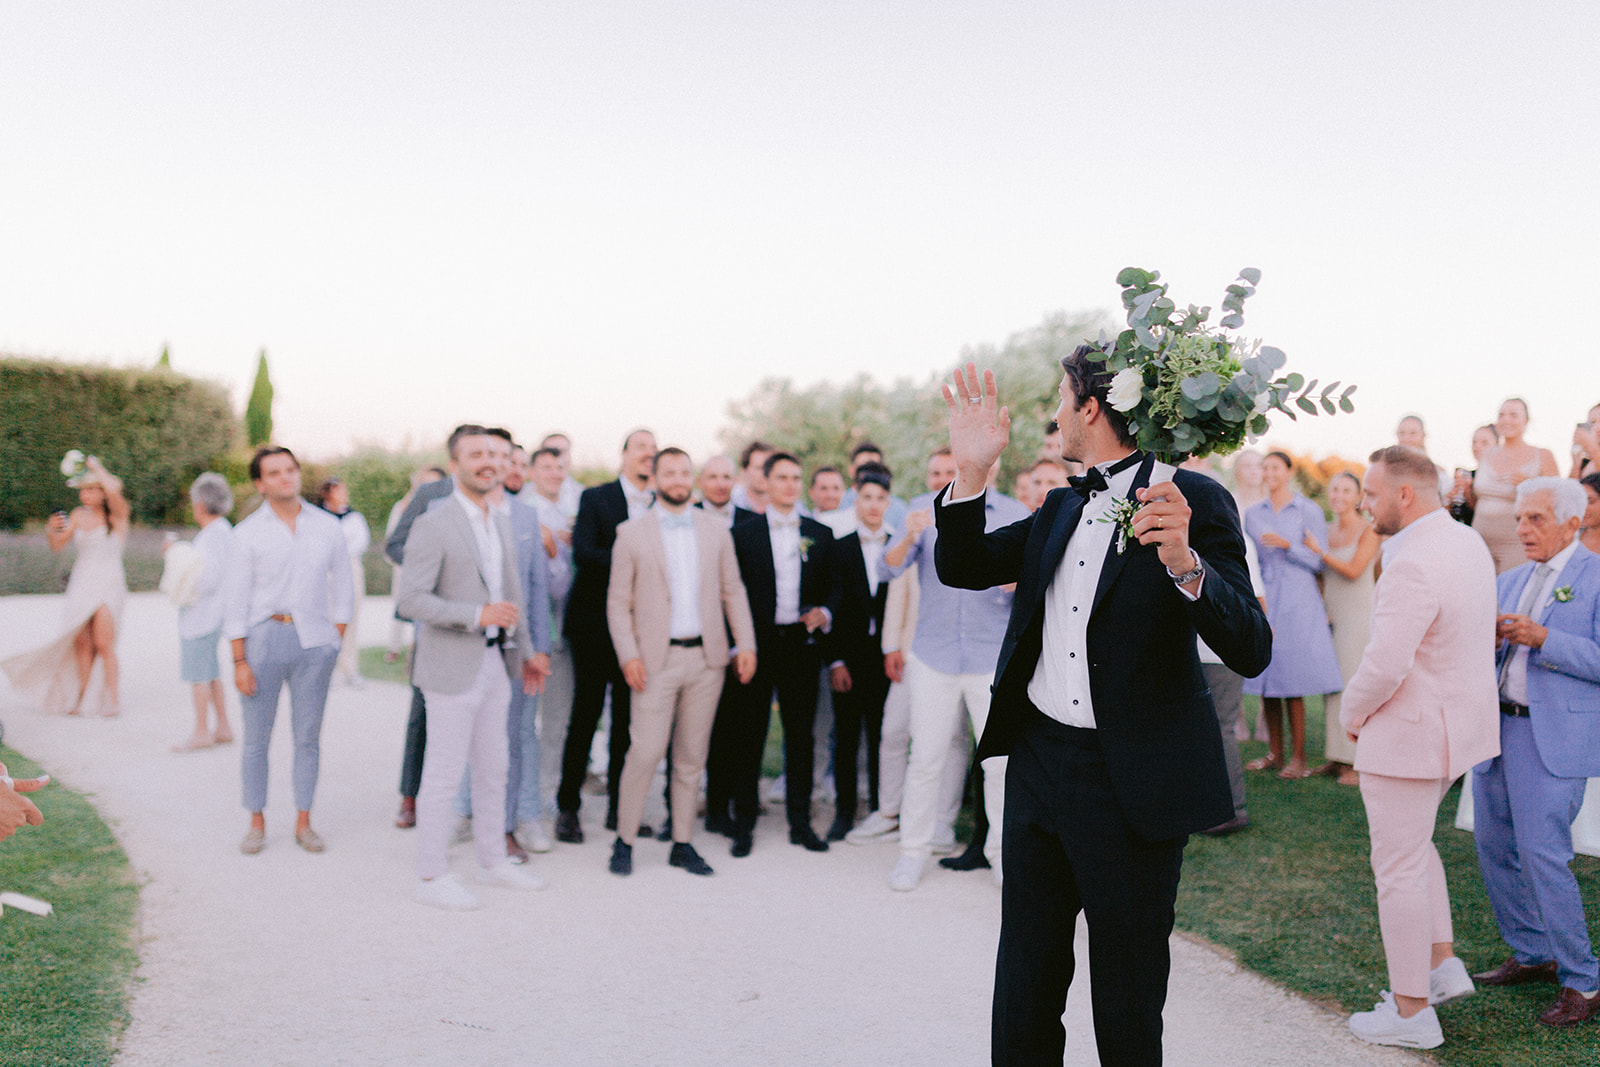 idee originale de lancer son bouquet, le marié tient dans la main sa boutonnière et s'apprête à la lancer derrière lui avec les invités hommes dans son dos